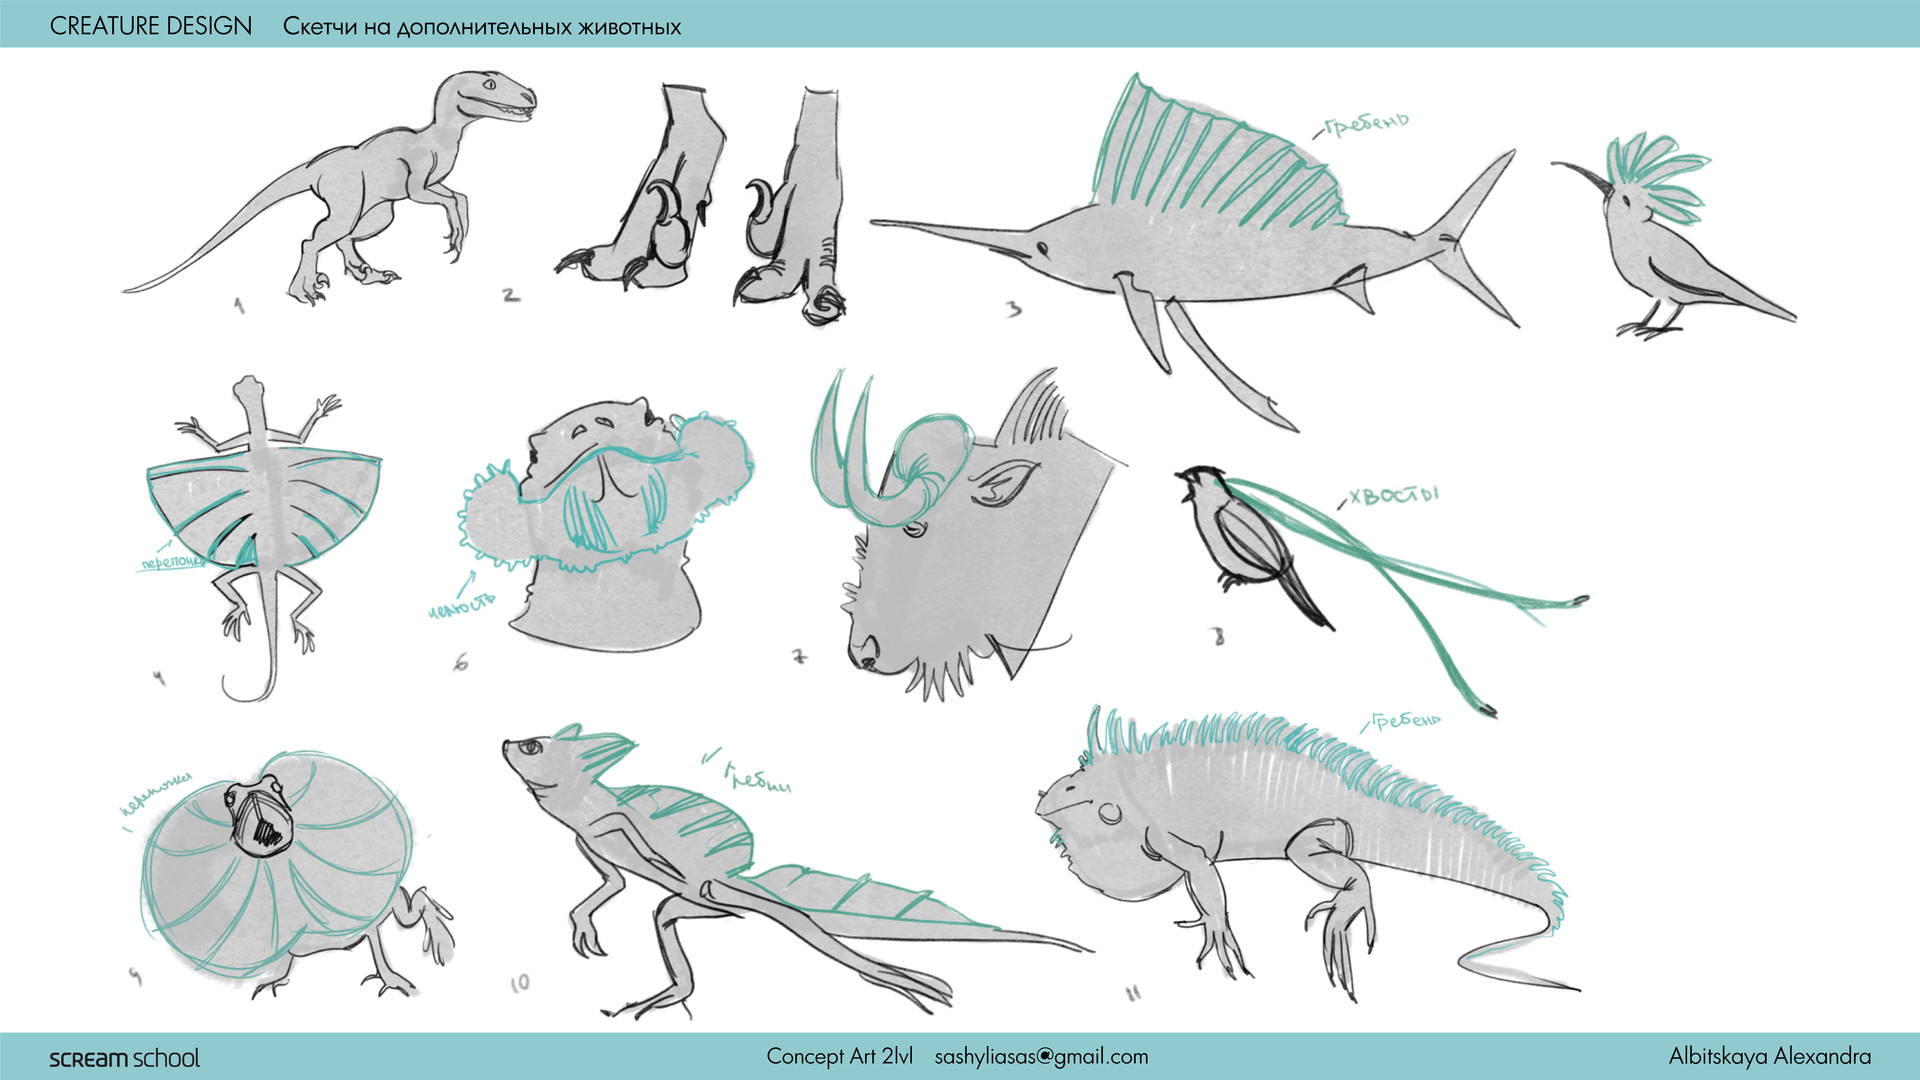 Creatures of sonaria kaiju animals. Creatures of sonria существа. Creatures of sonaria Concept Art. Чертежи simple creatures в профиль. Opralegion creatures of sonaria.